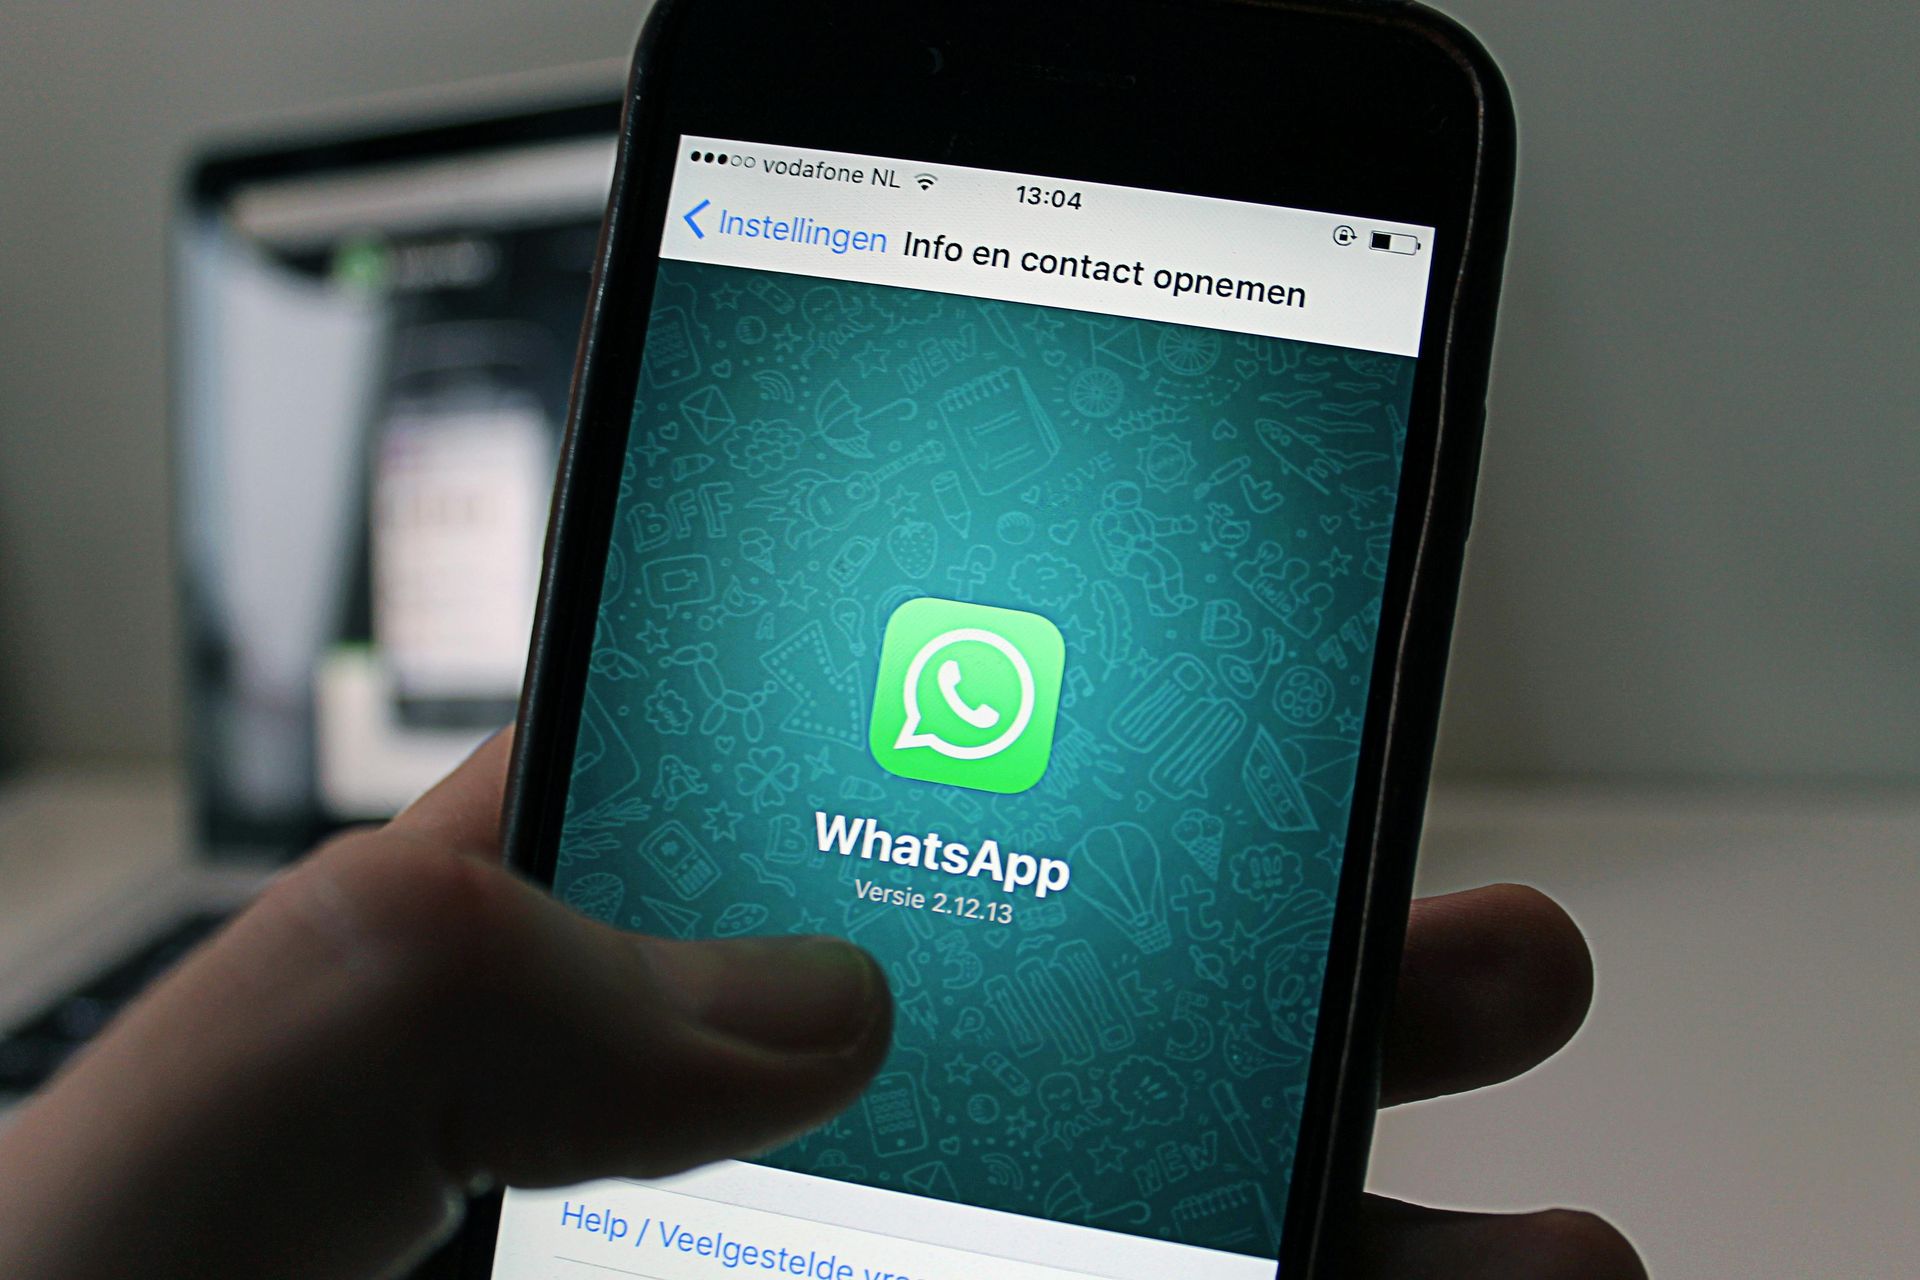 Come funziona la funzionalità Filtri chat di WhatsApp?